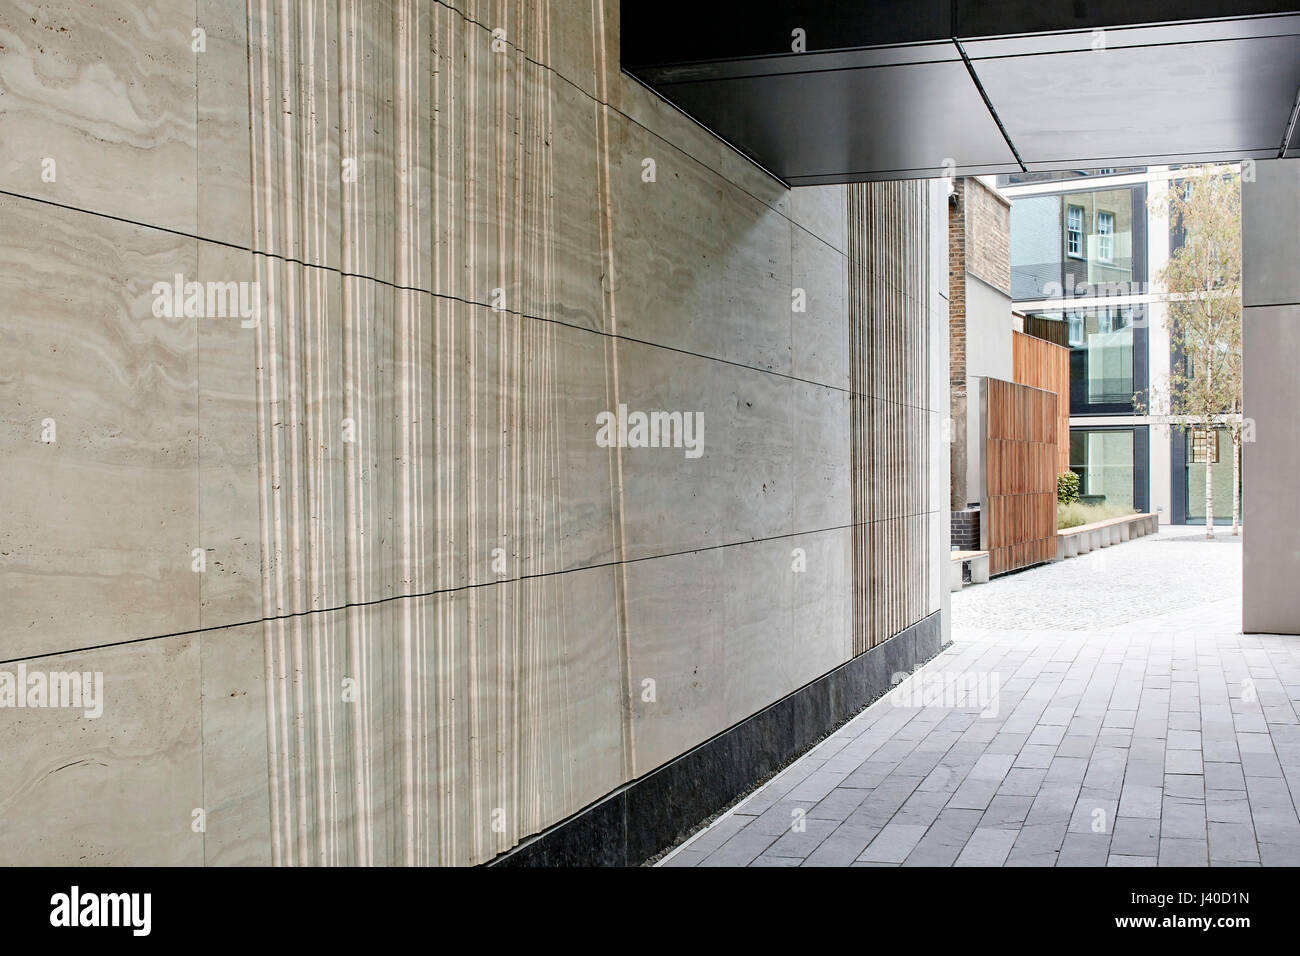 Gated Unterführung von Chancery Lane in Richtung Innenhof. Chancery Lane, London, Vereinigtes Königreich. Architekt: Bennetts Associates Architects, 2015. Stockfoto